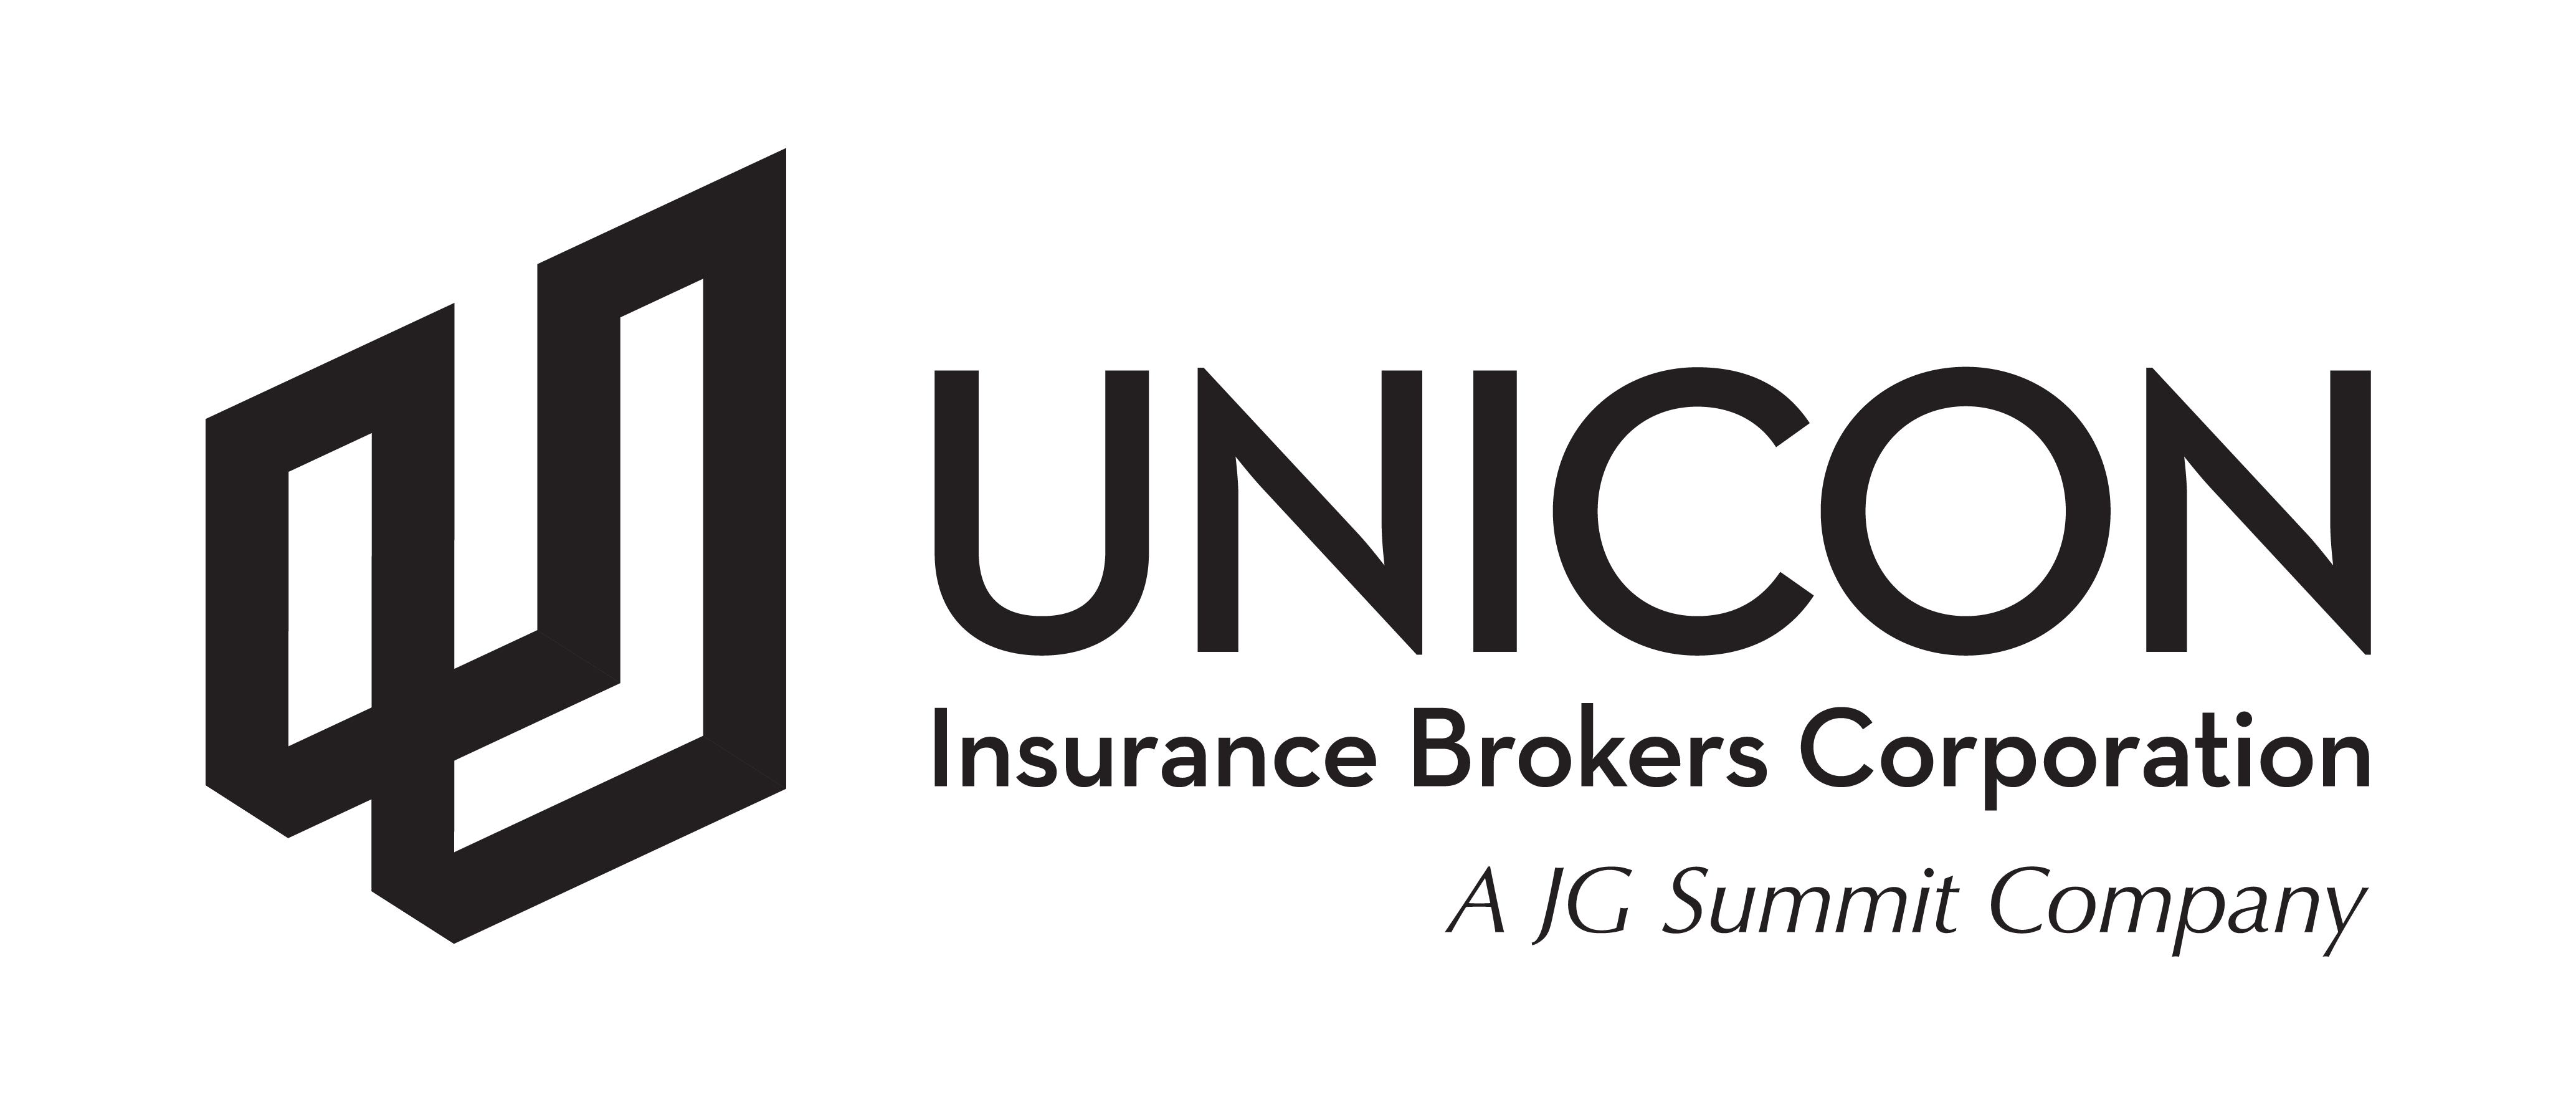 Unicon Logo